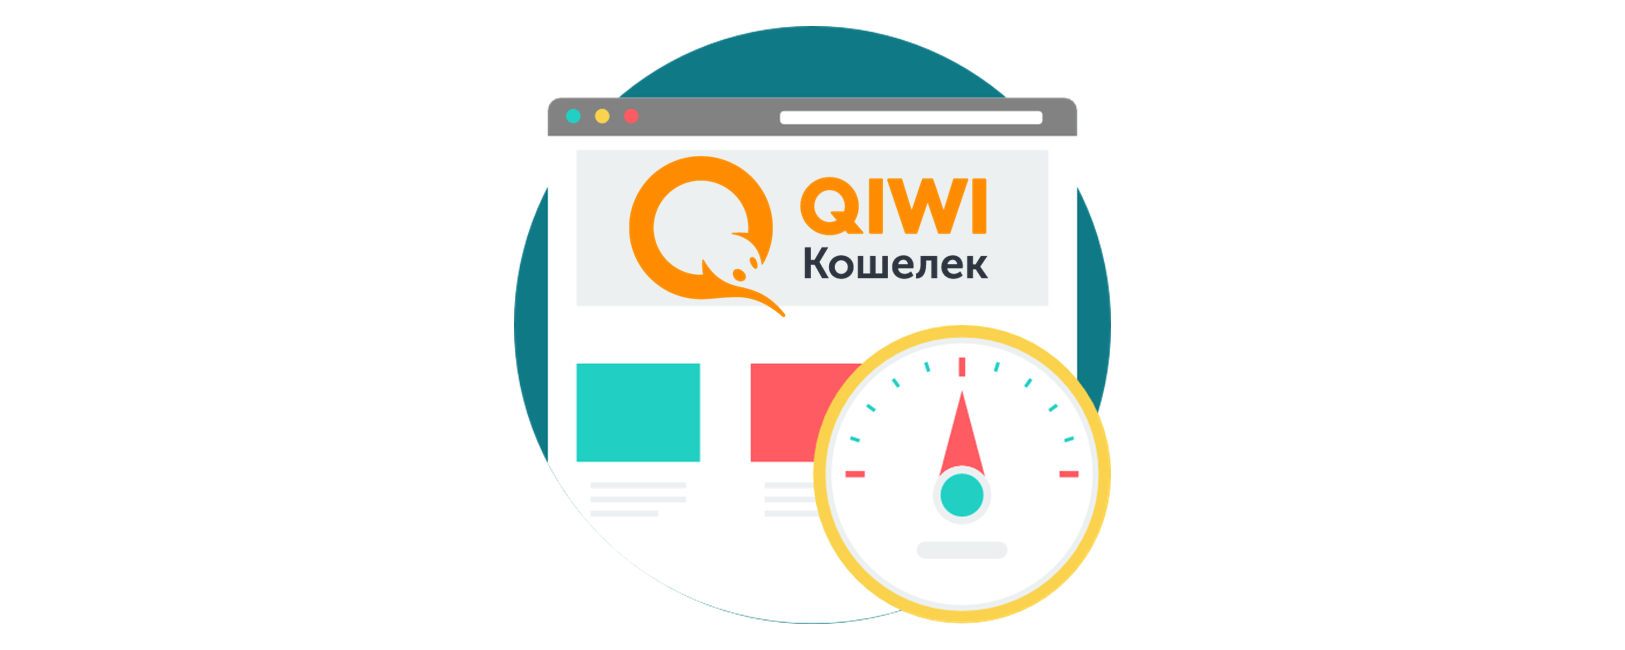 Займы 0 процентов первый раз быстрый qiwi на кредитную карту